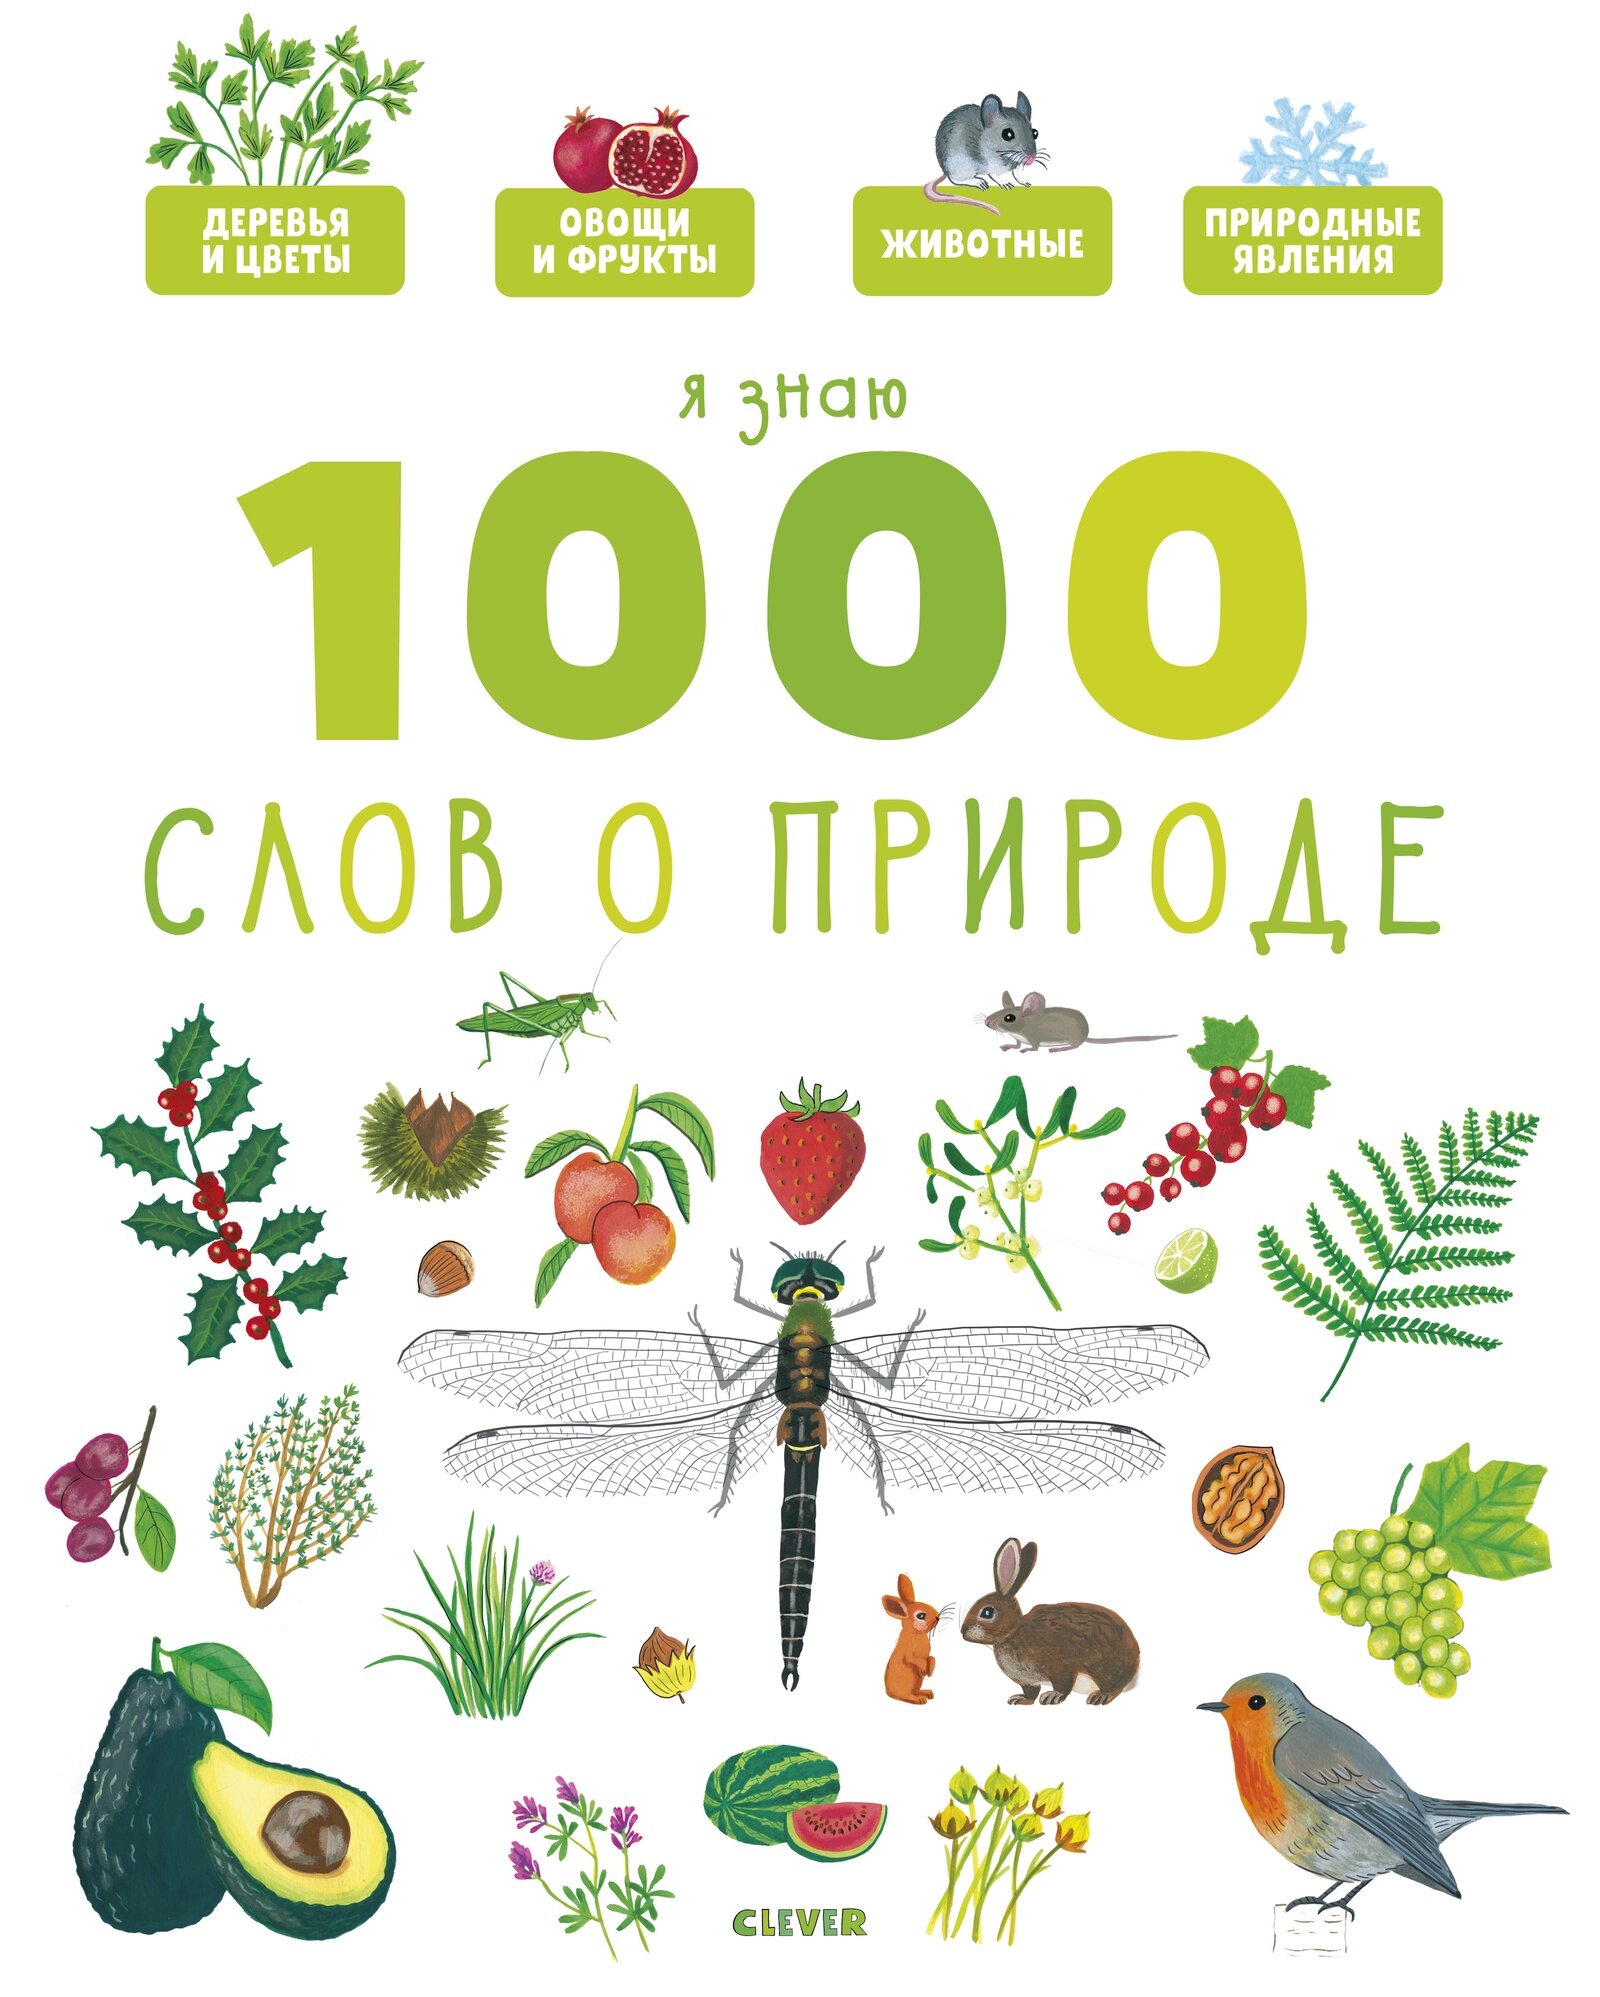 Я знаю 1000 слов о природе. Главная книга малыша. Энциклопедия для детей